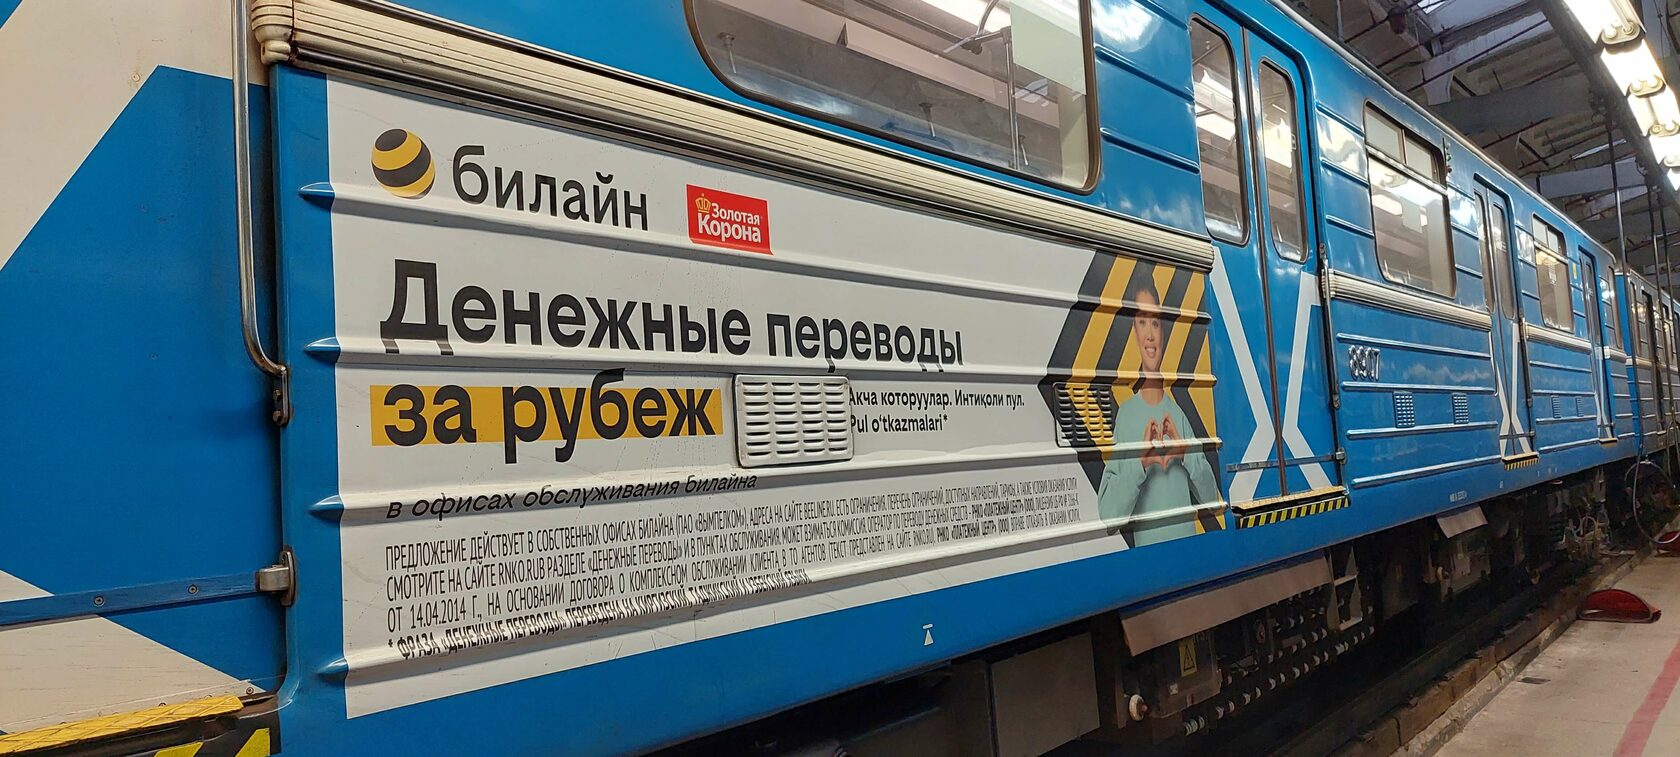 Реклама на бортах вагонов метро